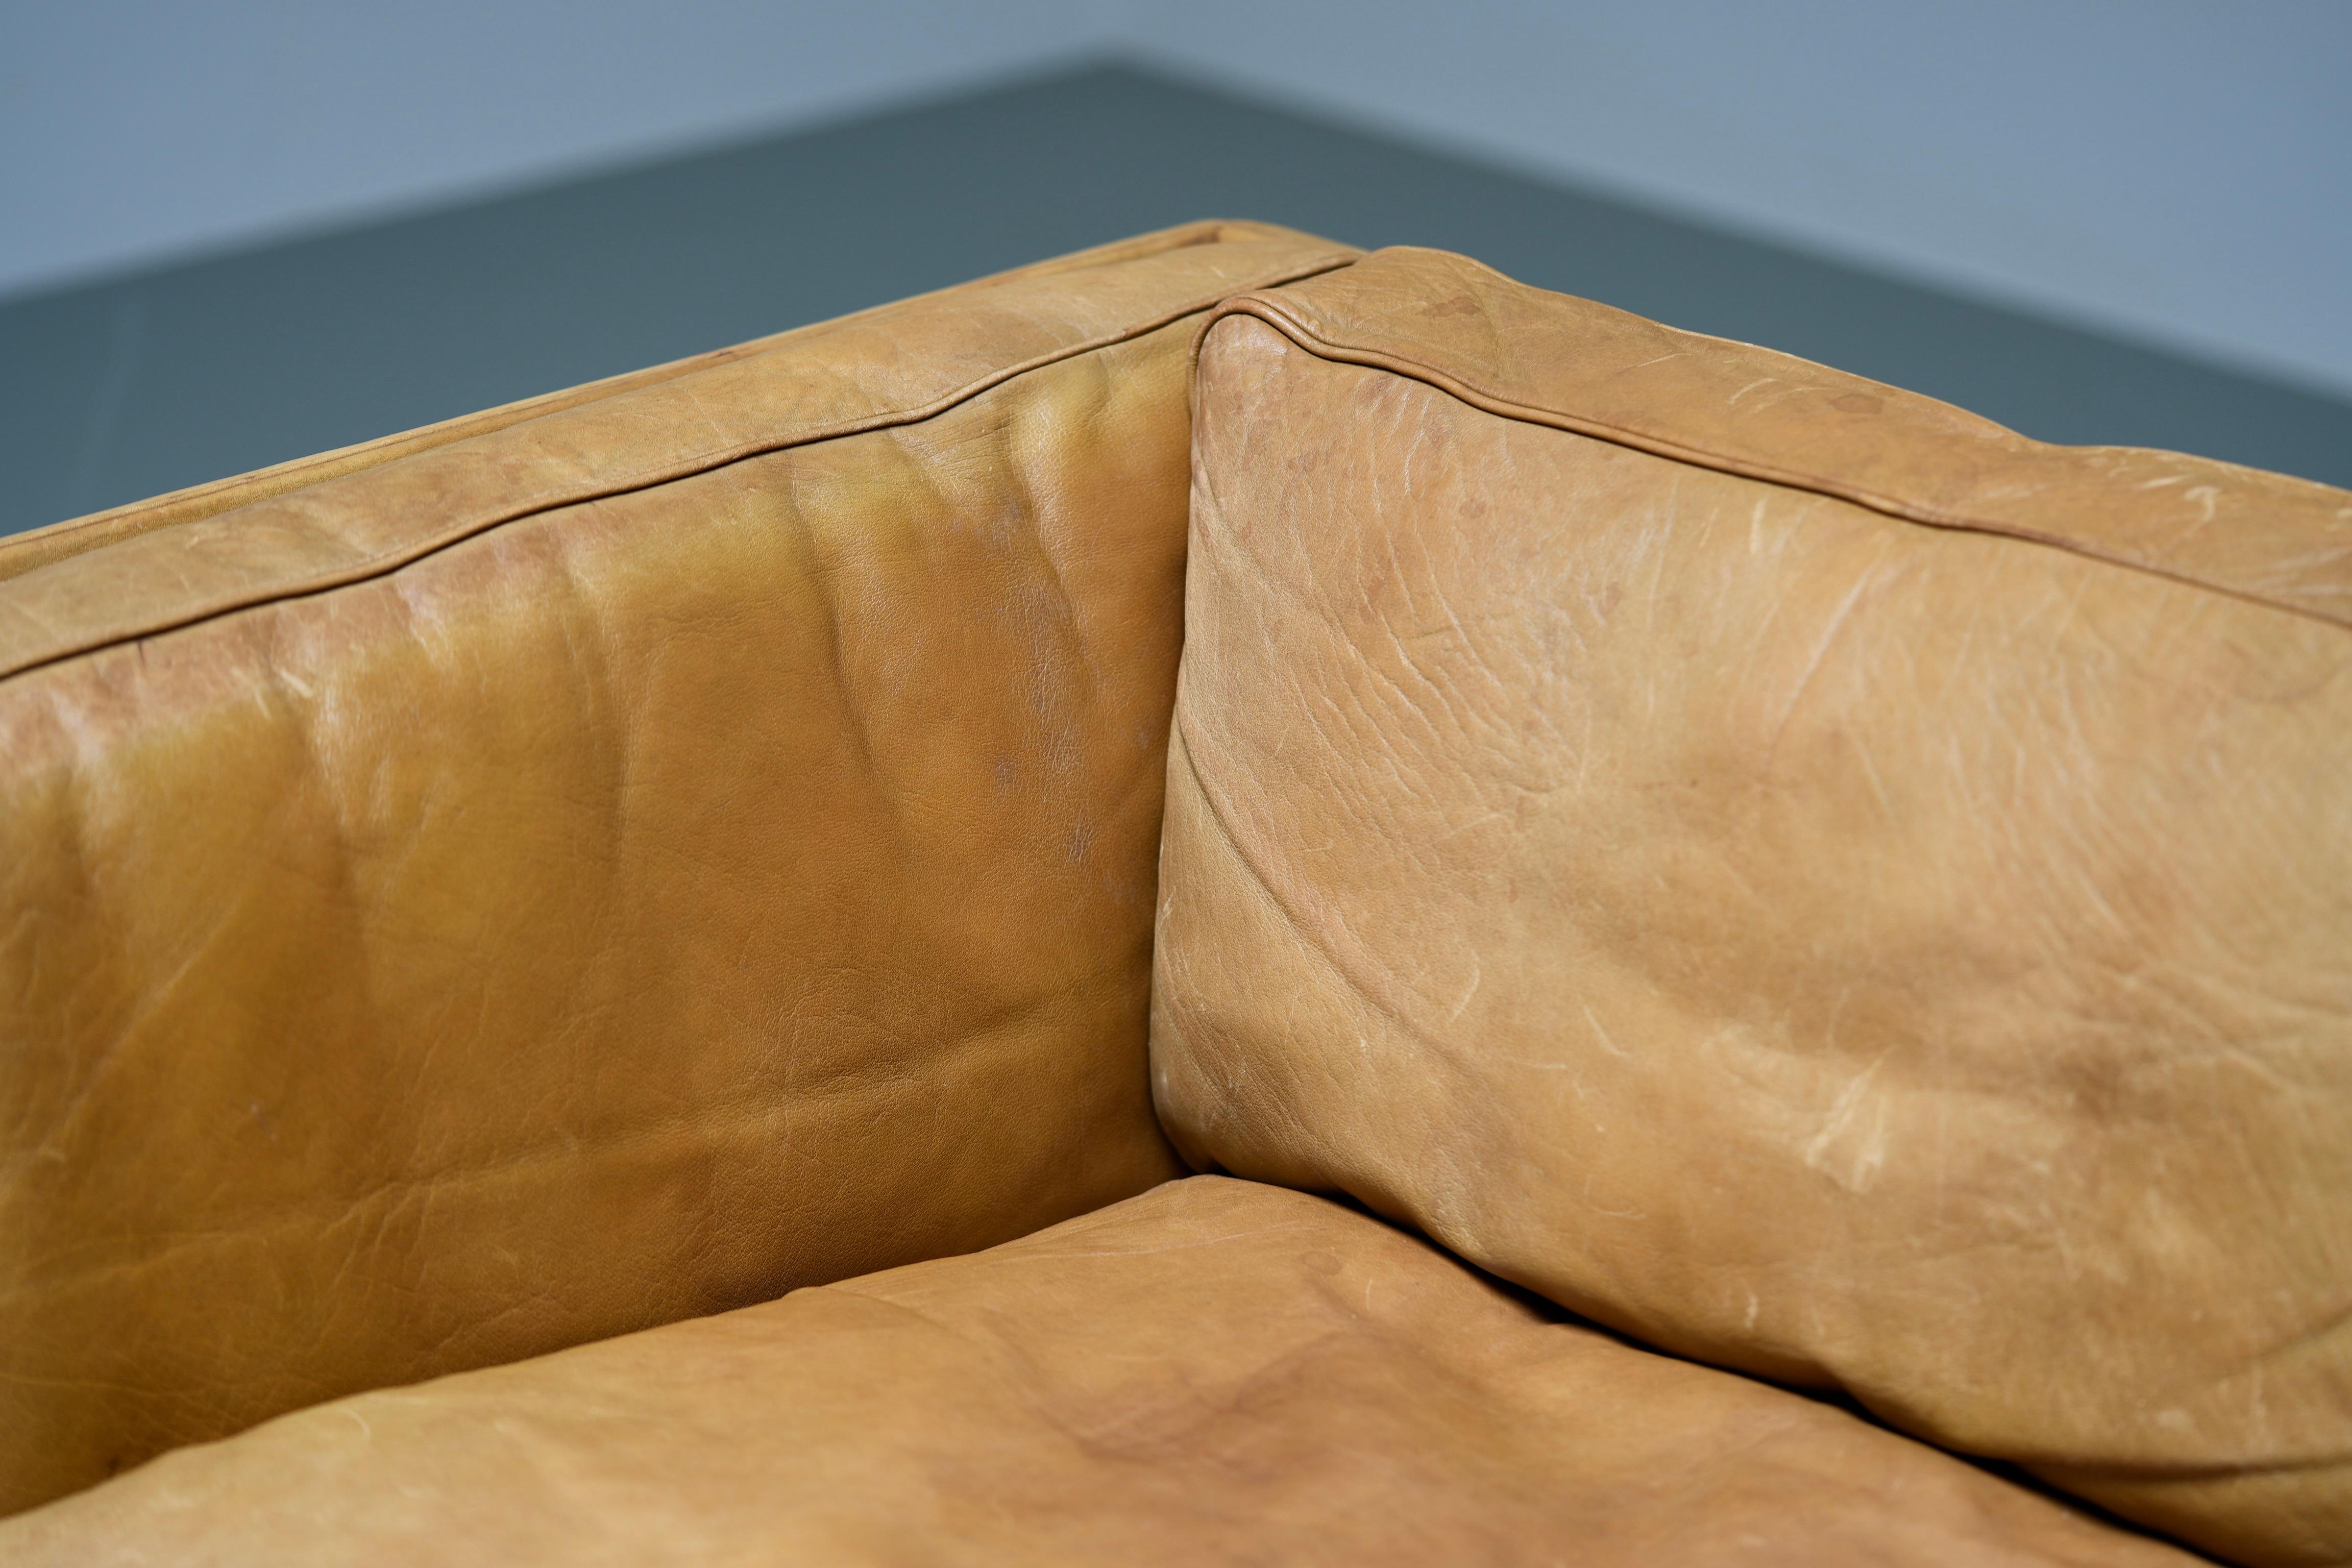 Illum Wikkelsø Three-Seat ‘V11’ Sofa in Cognac Leather, Denmark, 1960s For Sale 1